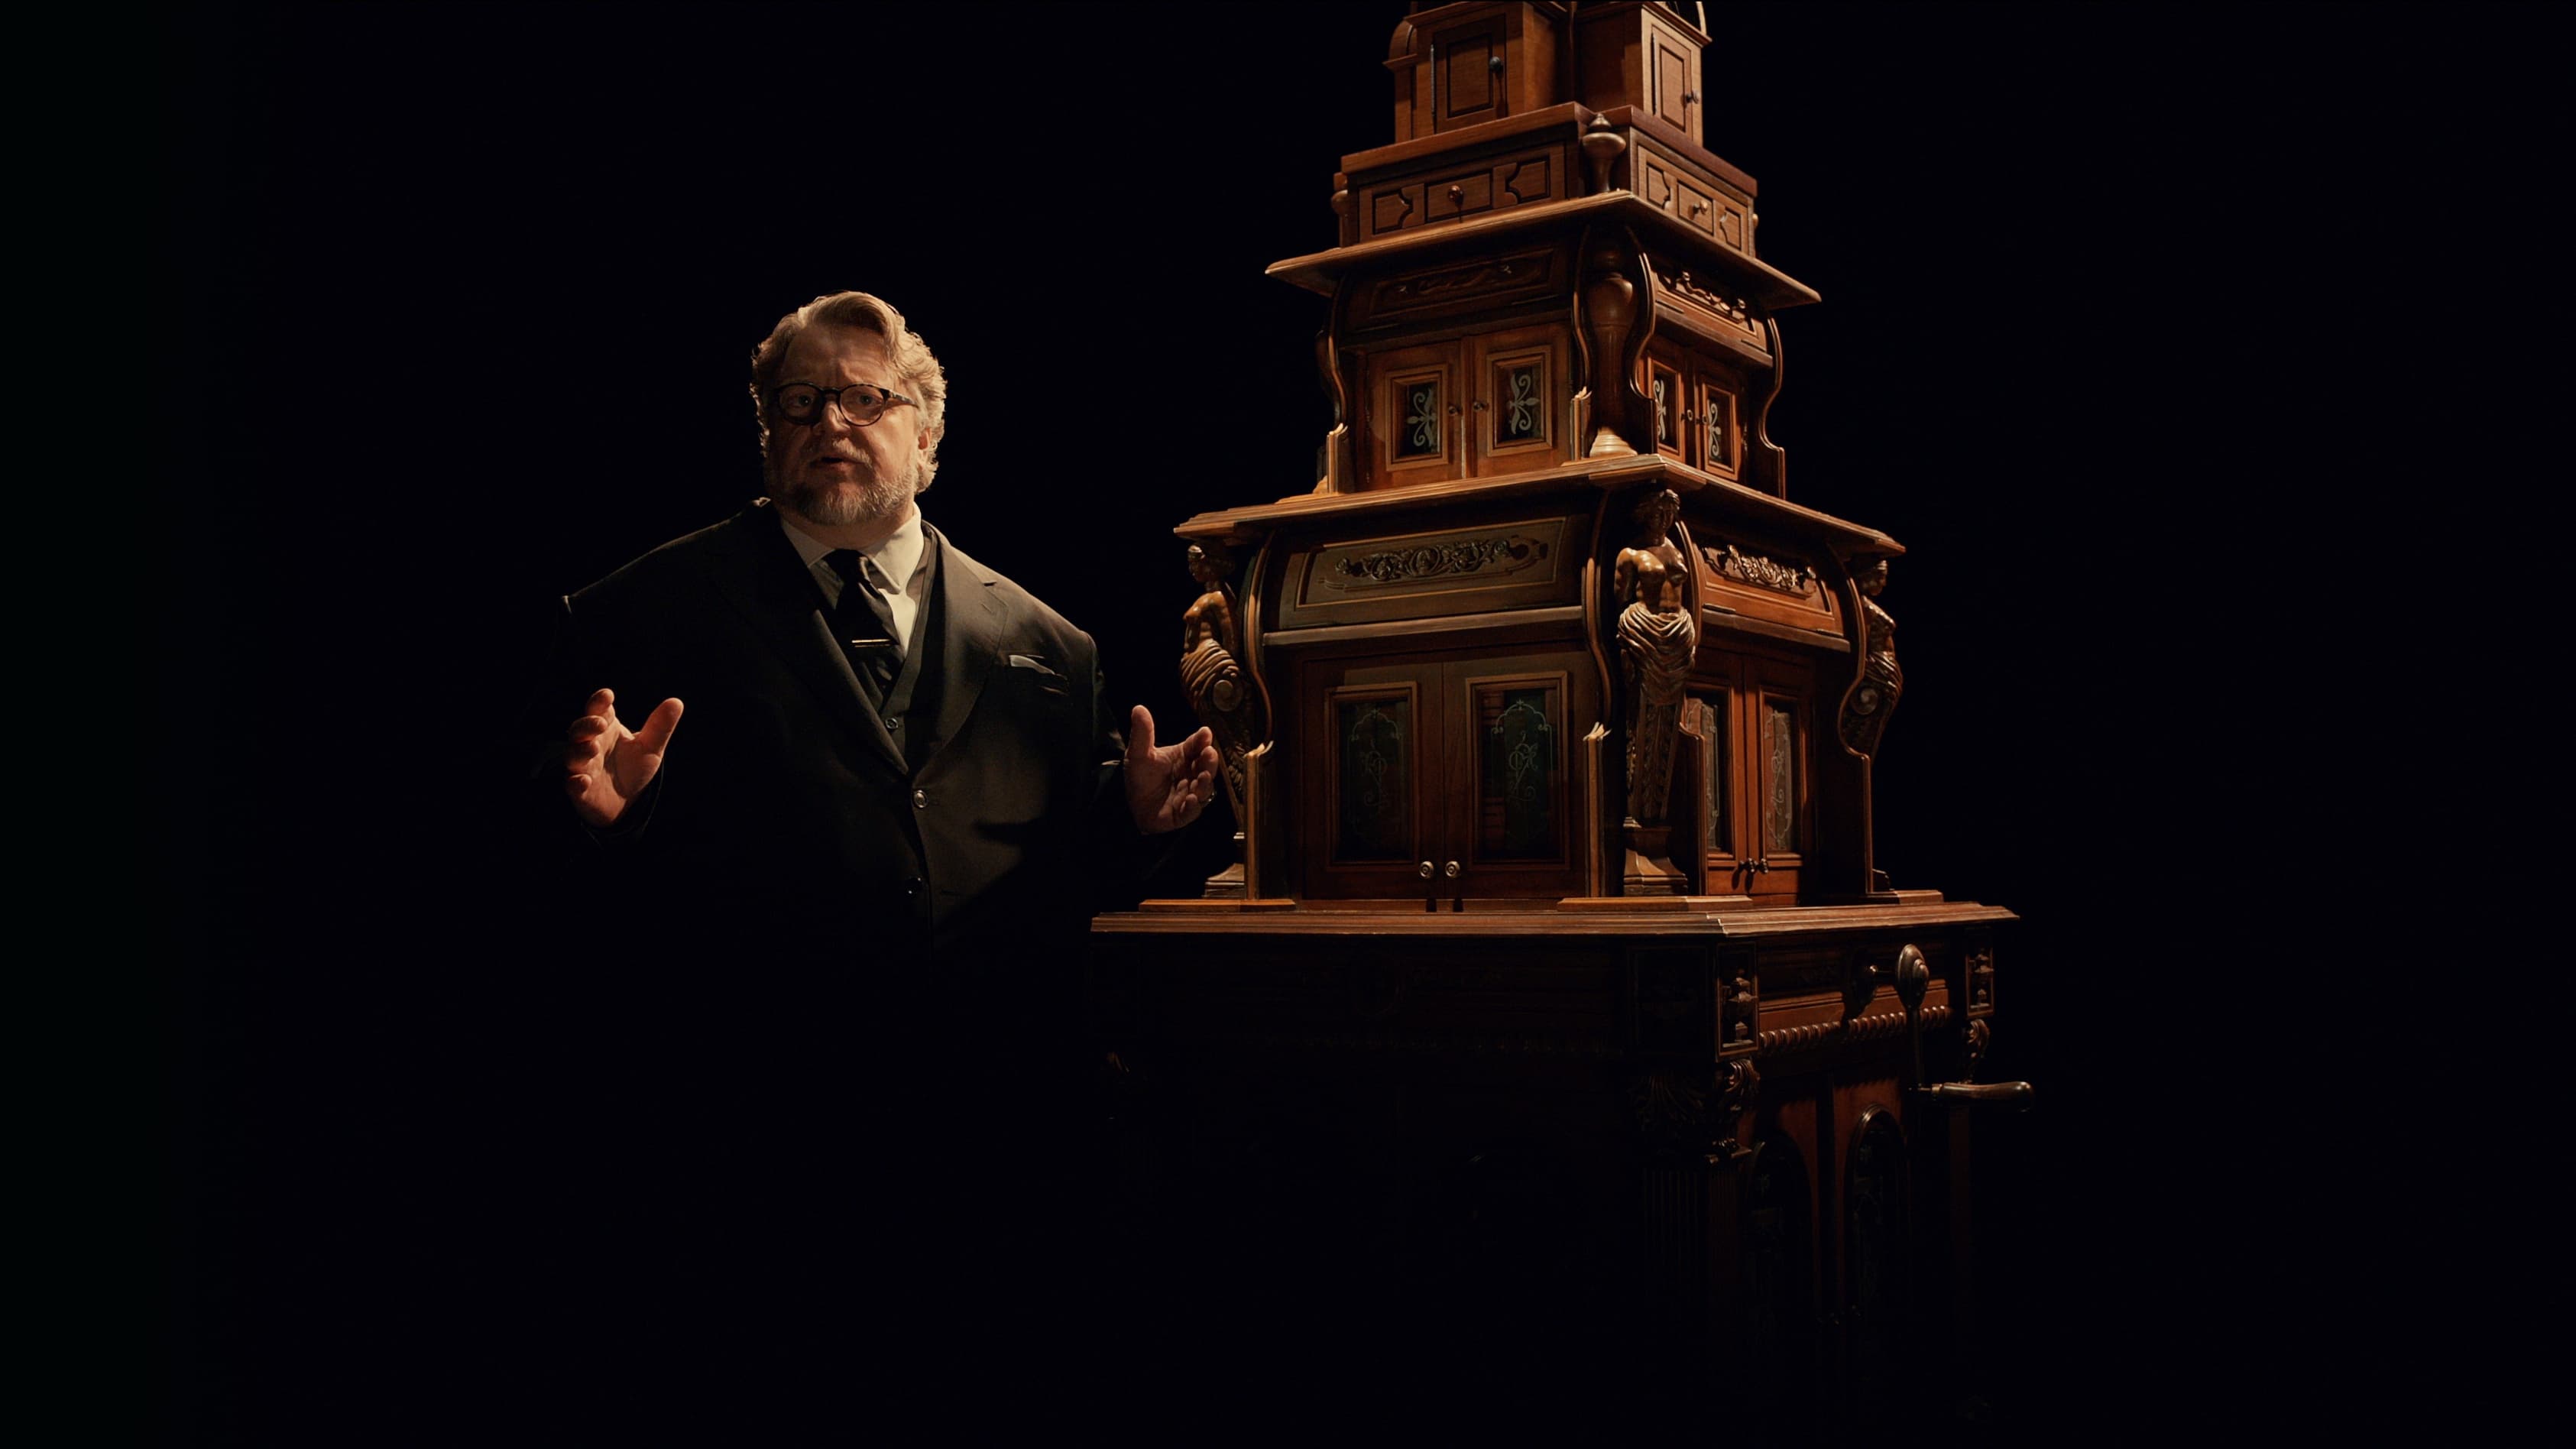 El Gabinete de Curiosidades de Guillermo del Toro